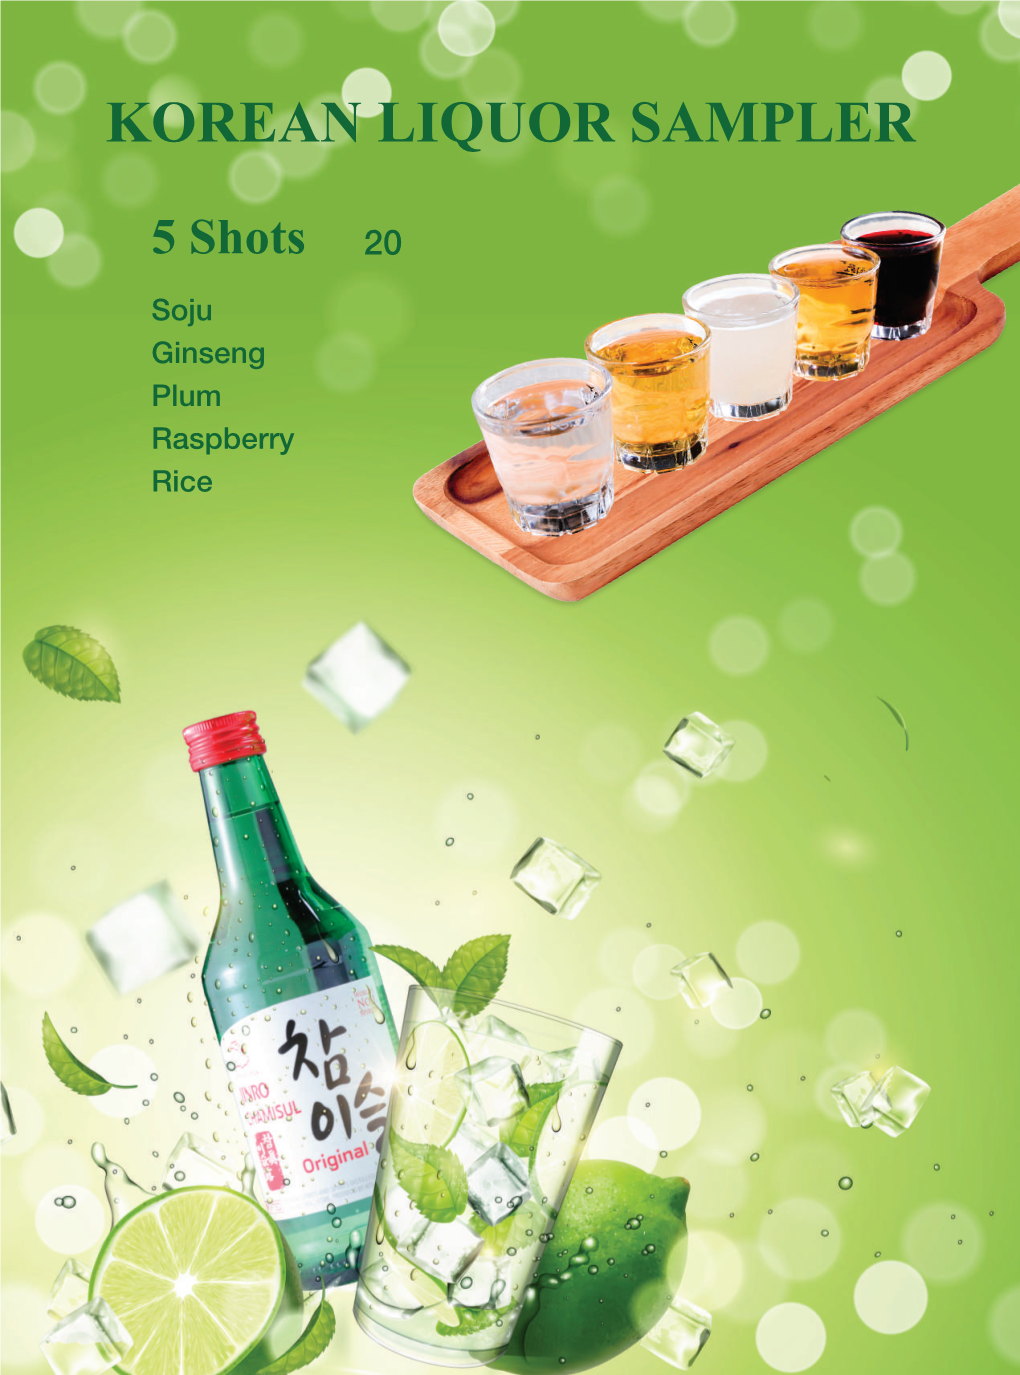 Korean Liquor Sampler